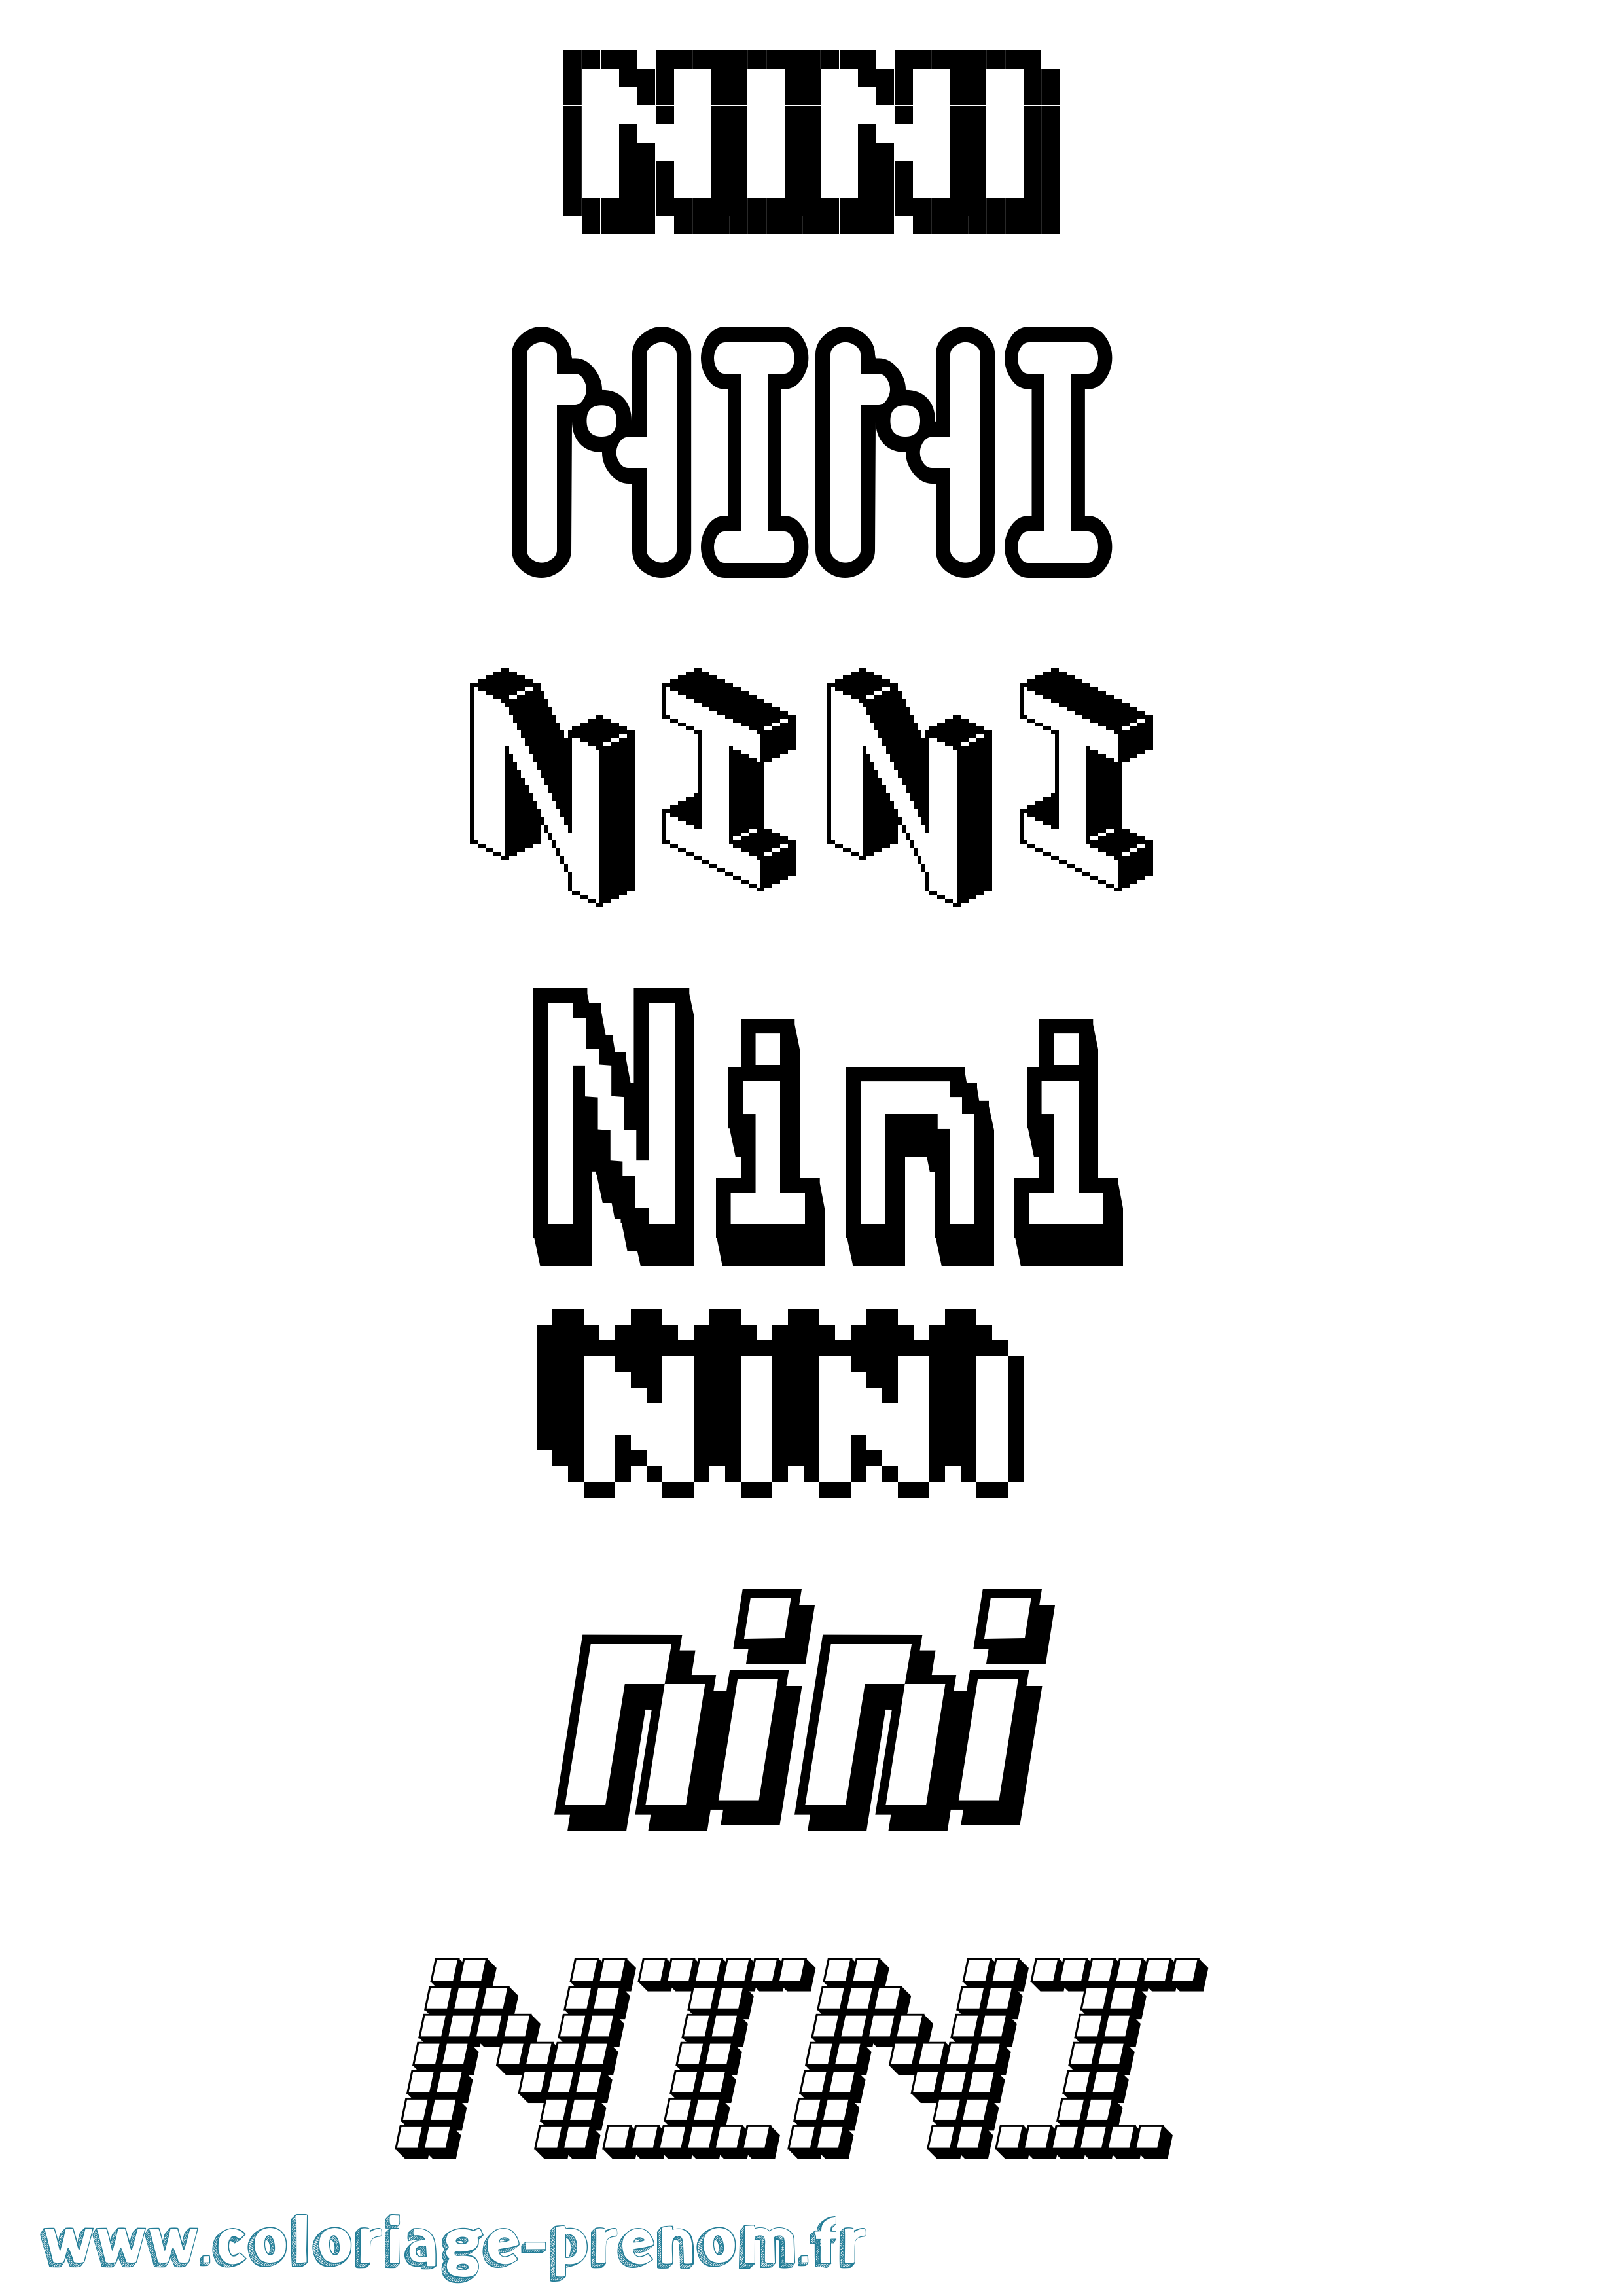 Coloriage prénom Nini Pixel